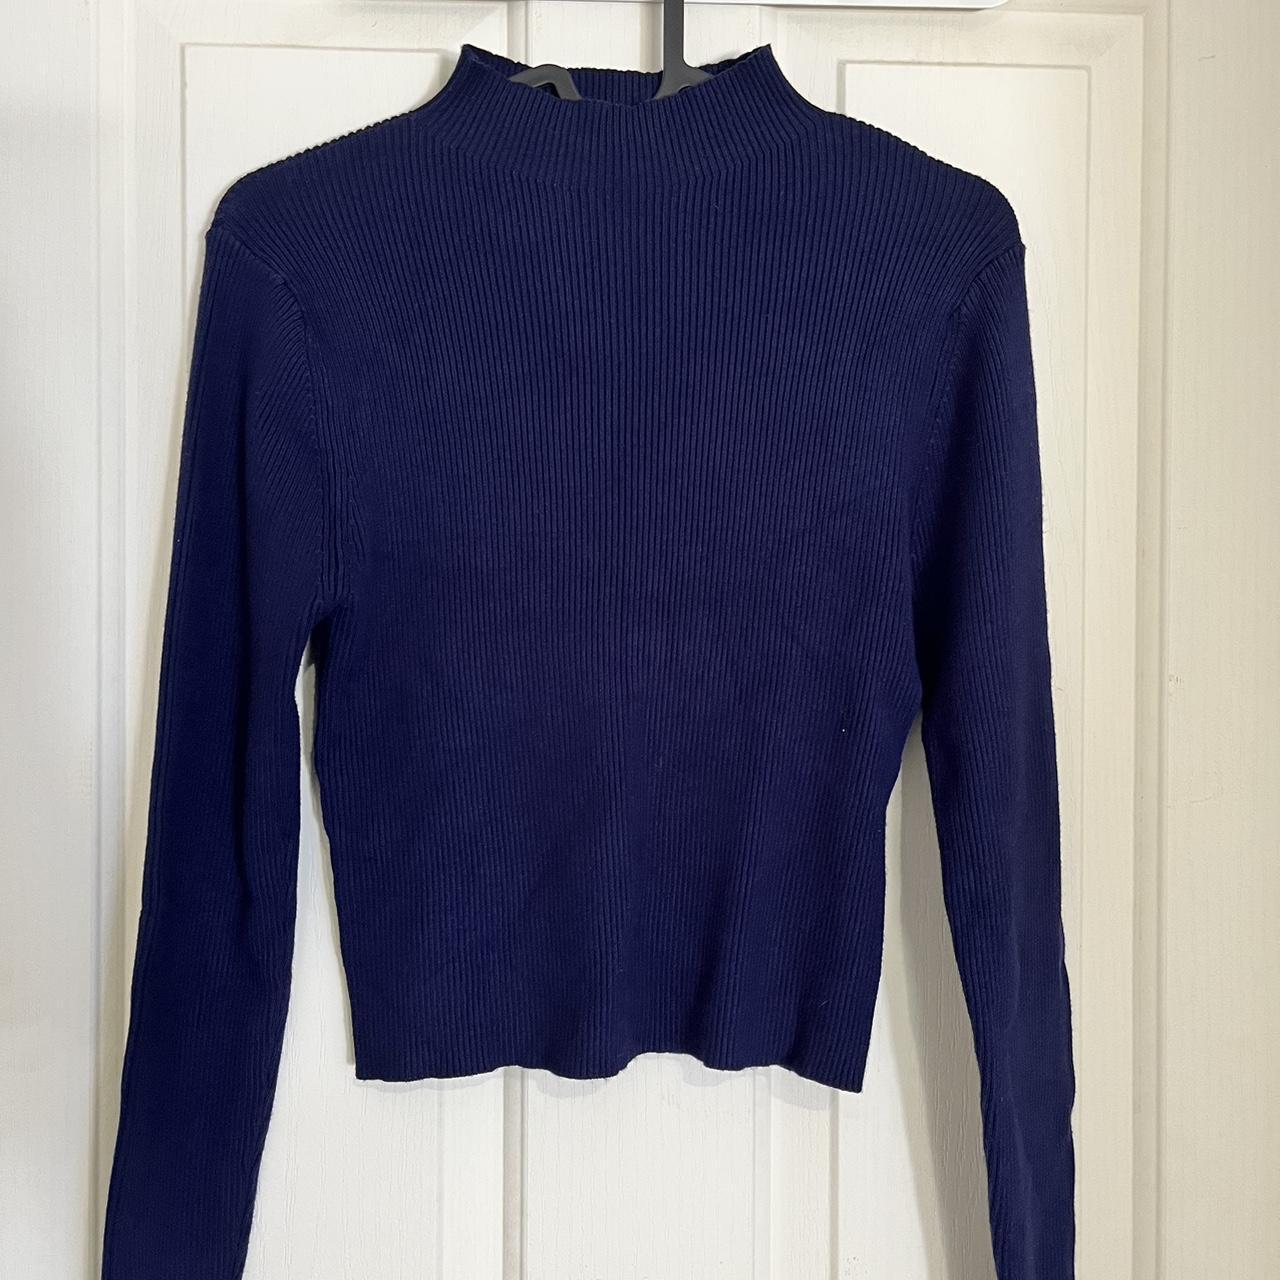 Oxford brand knit. Light navy colour. Mock neck.... - Depop